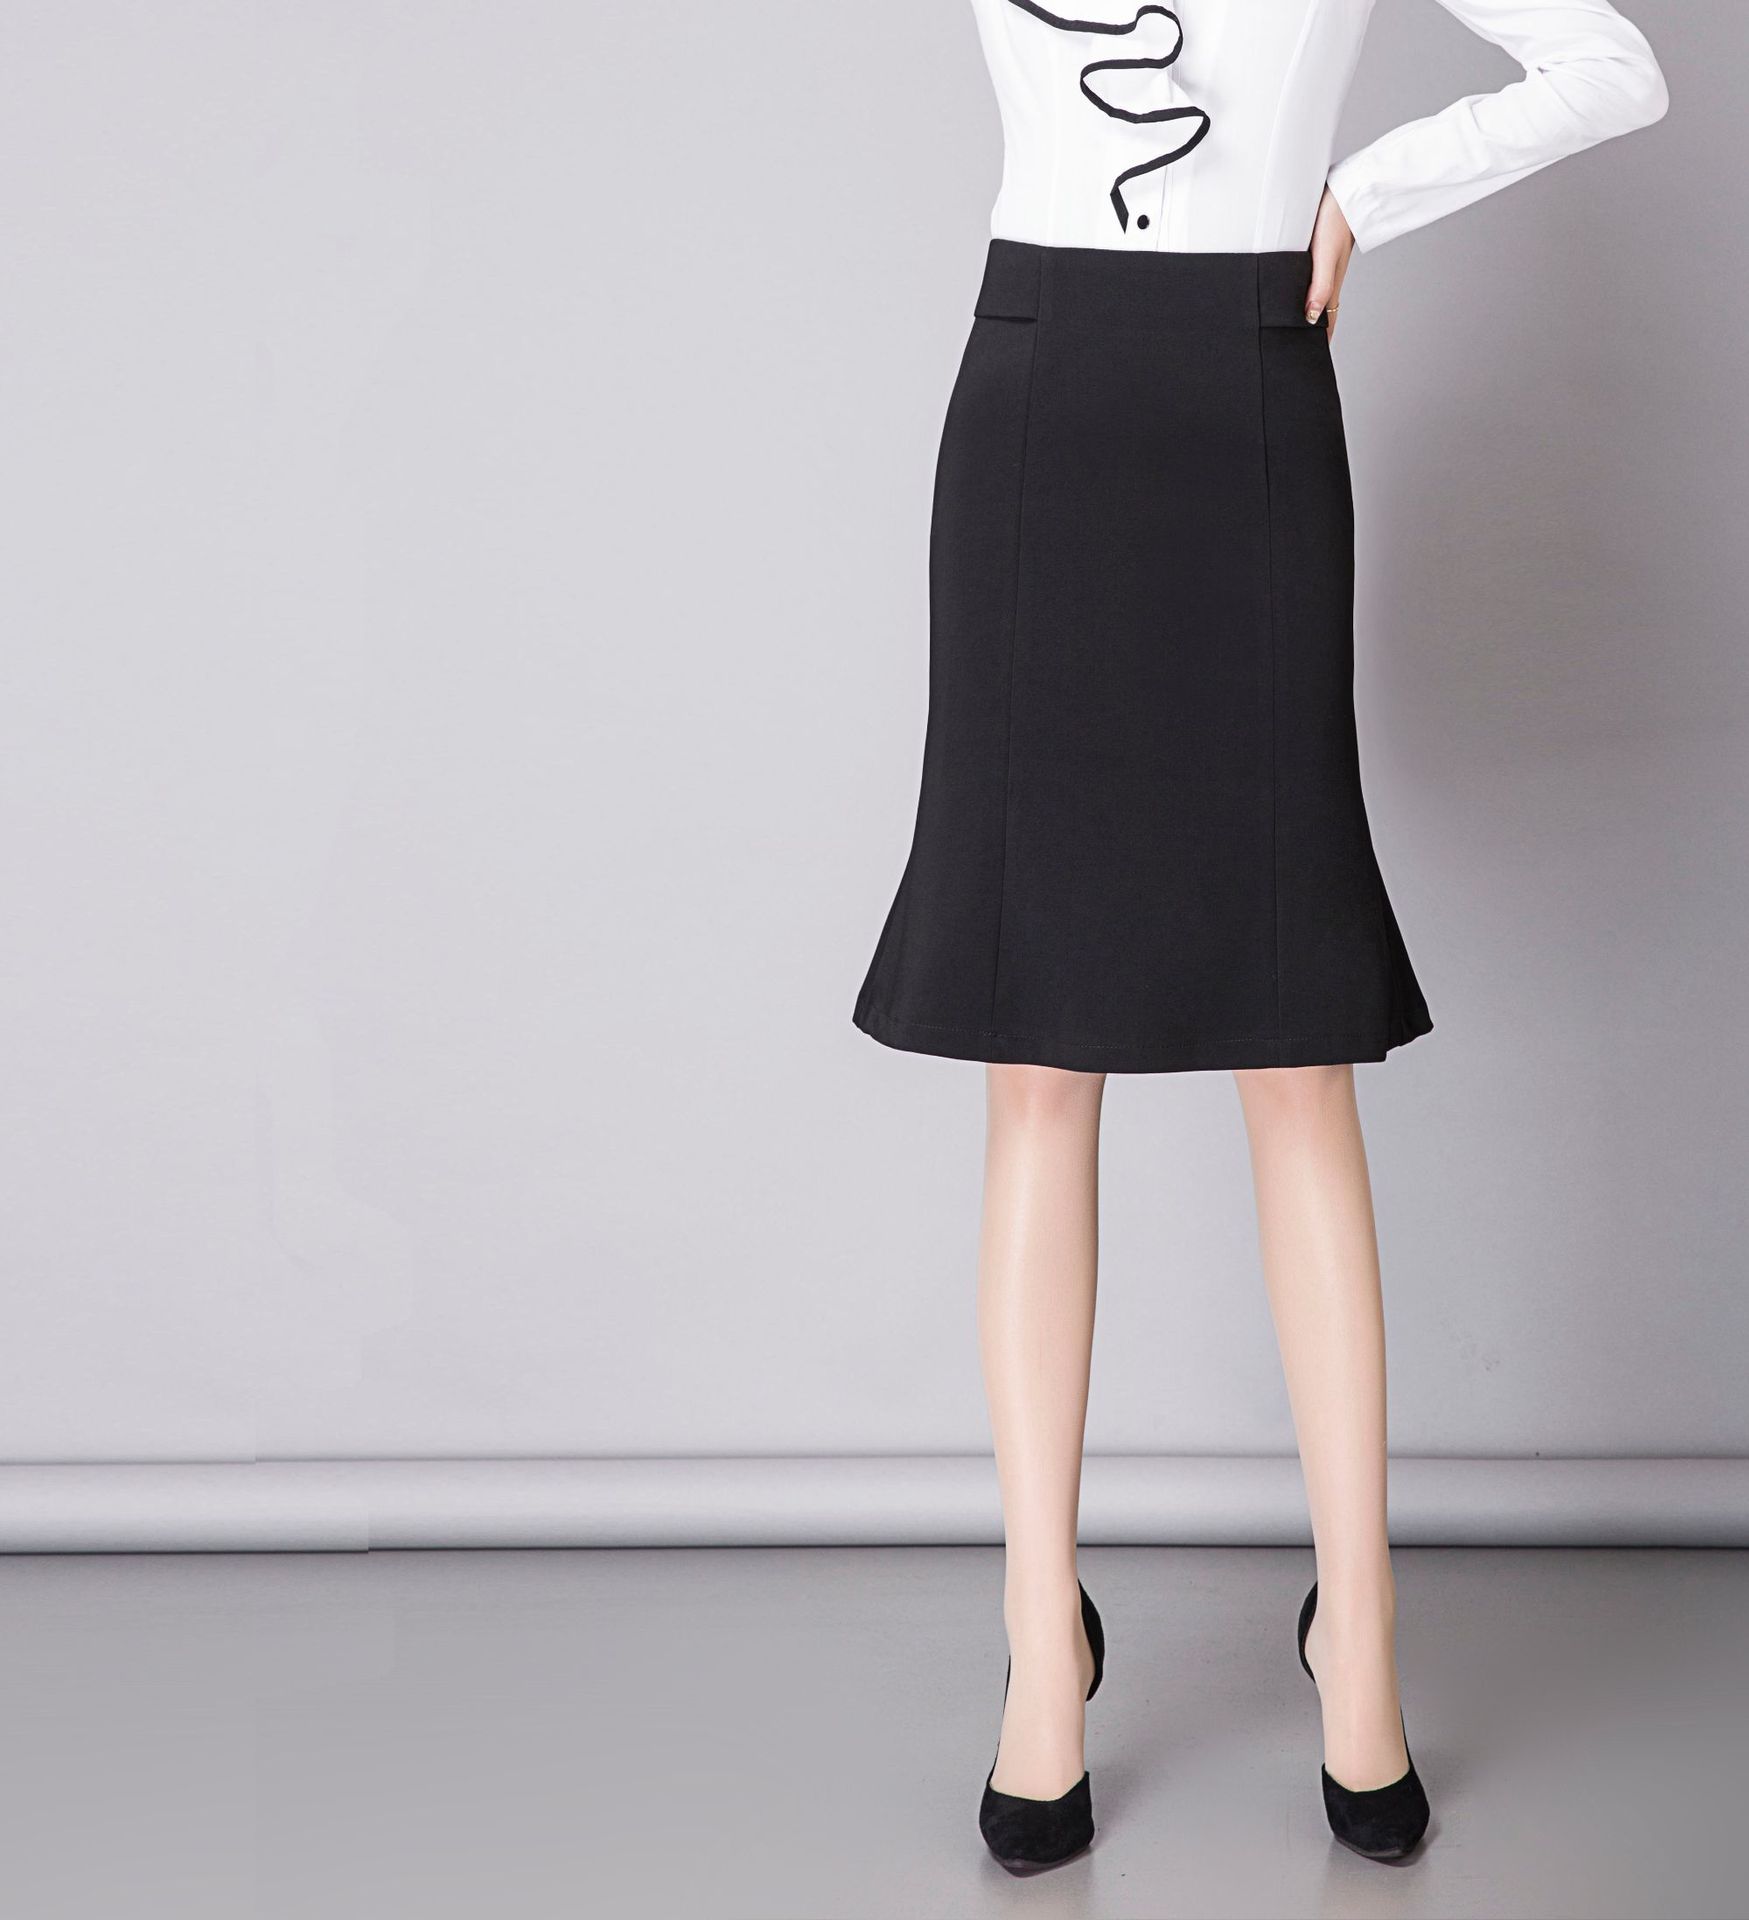 厂家批发2018春季新款女装一件代发韩版雪纺半身裙纯色包臀鱼尾裙示例图34